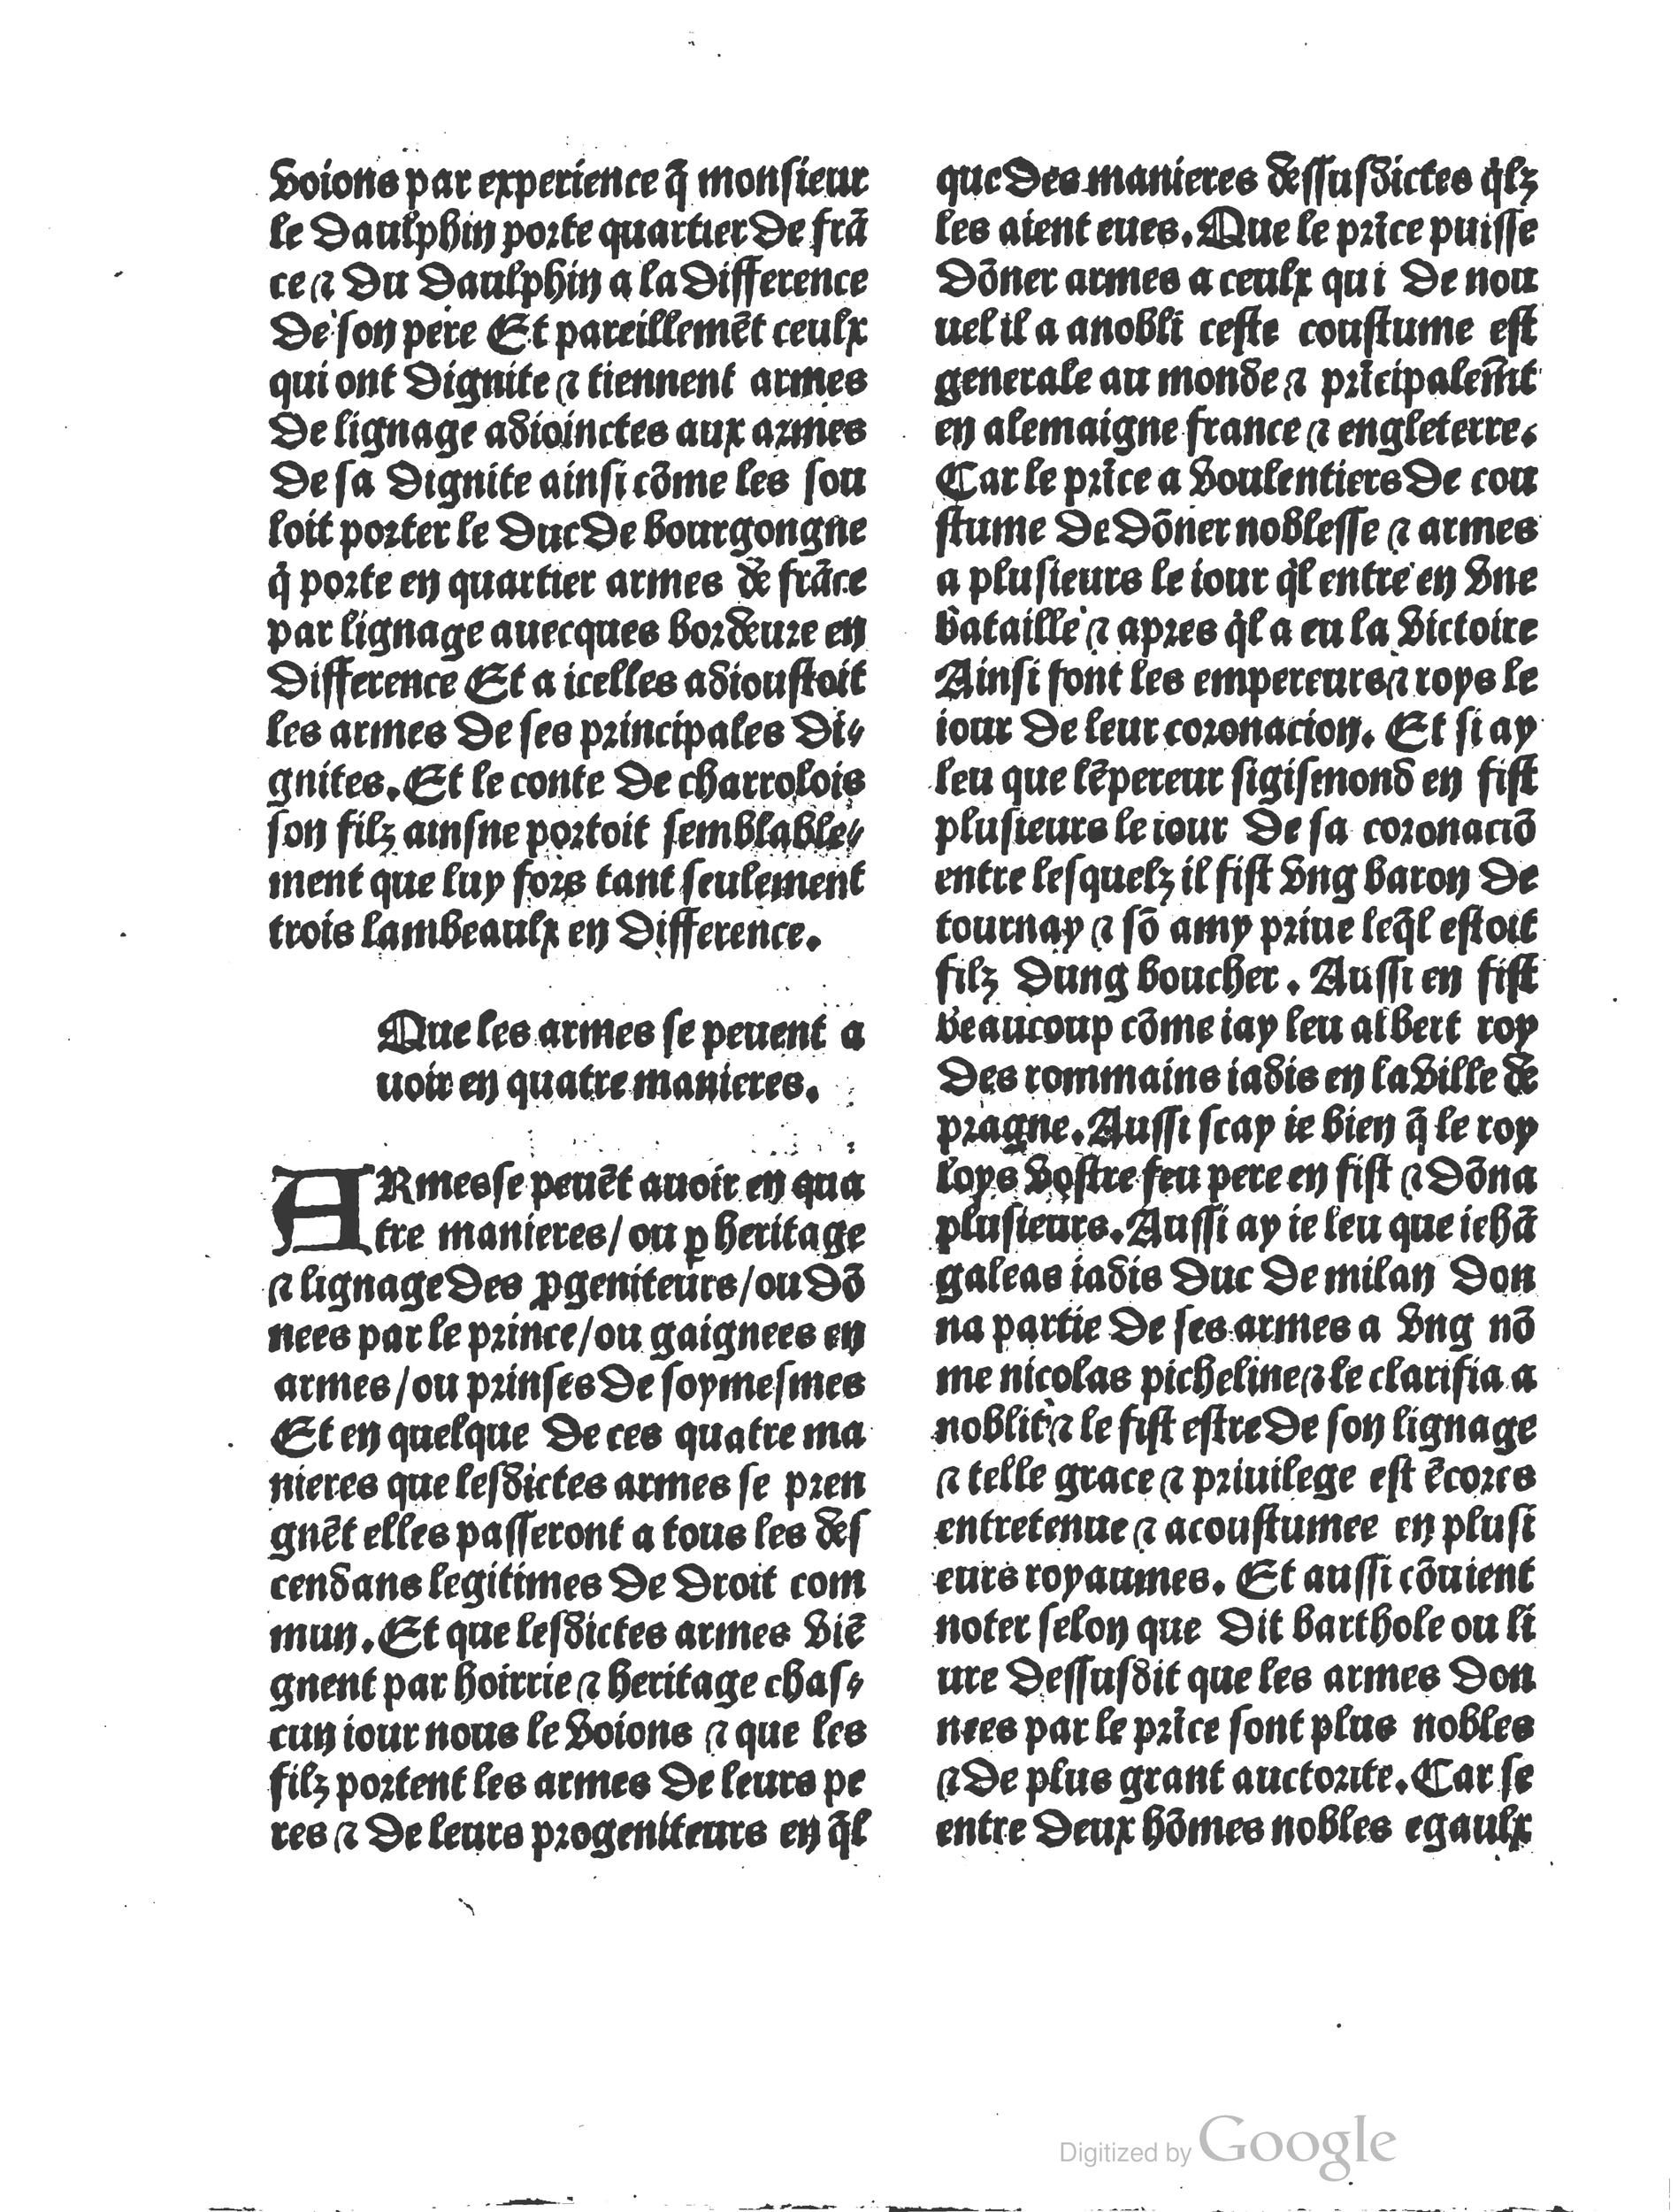 1497 Trésor de noblesse Vérard_BM Lyon_Page_090.jpg